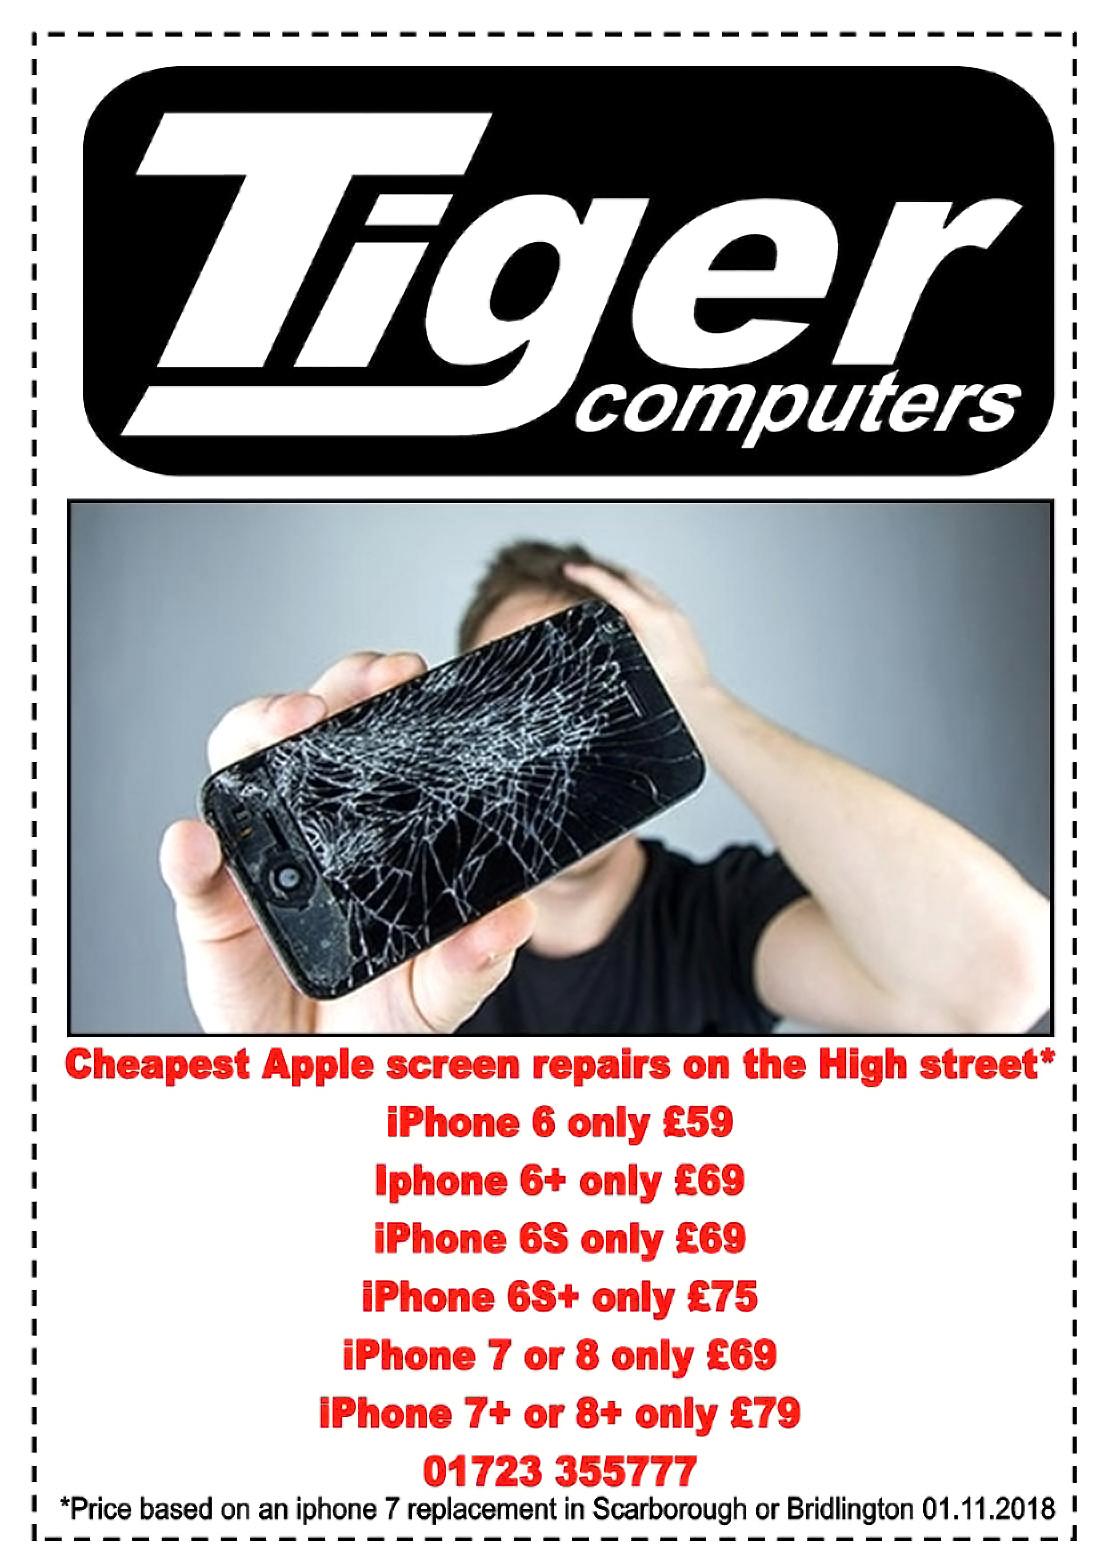 Tiger Computers iPhone Repairs